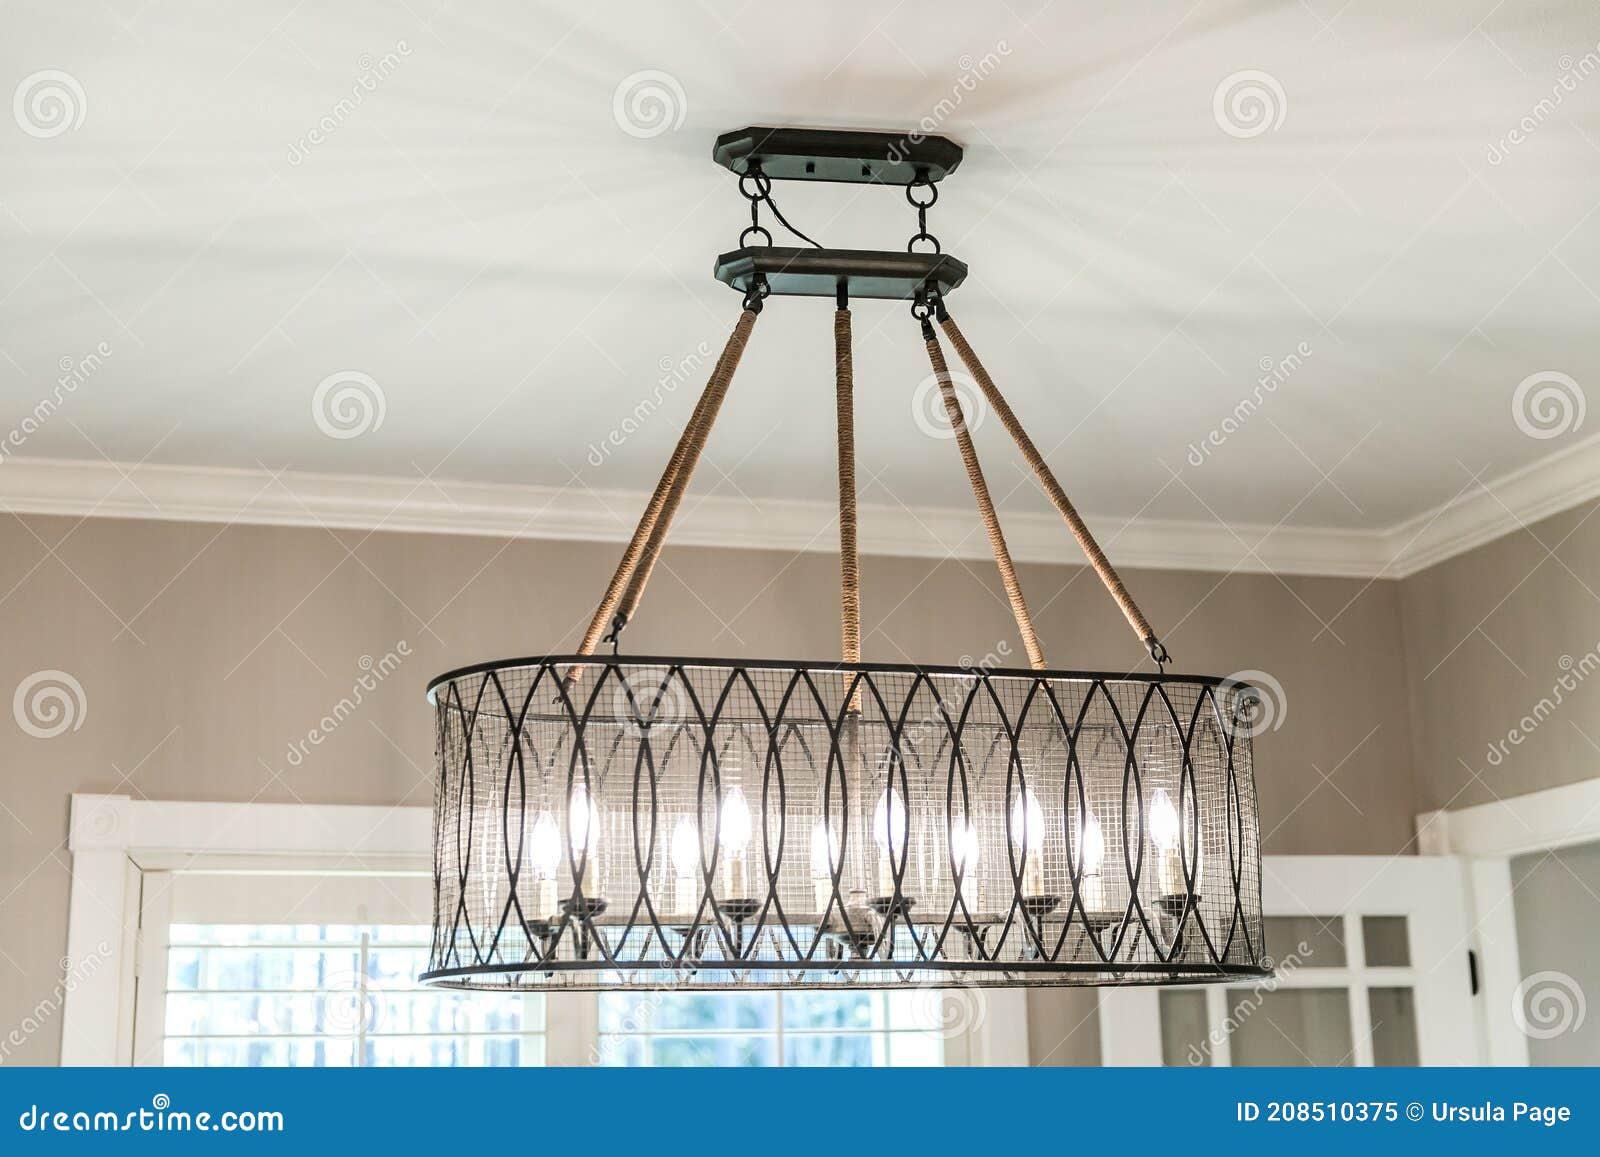 metal dining room light fixtures